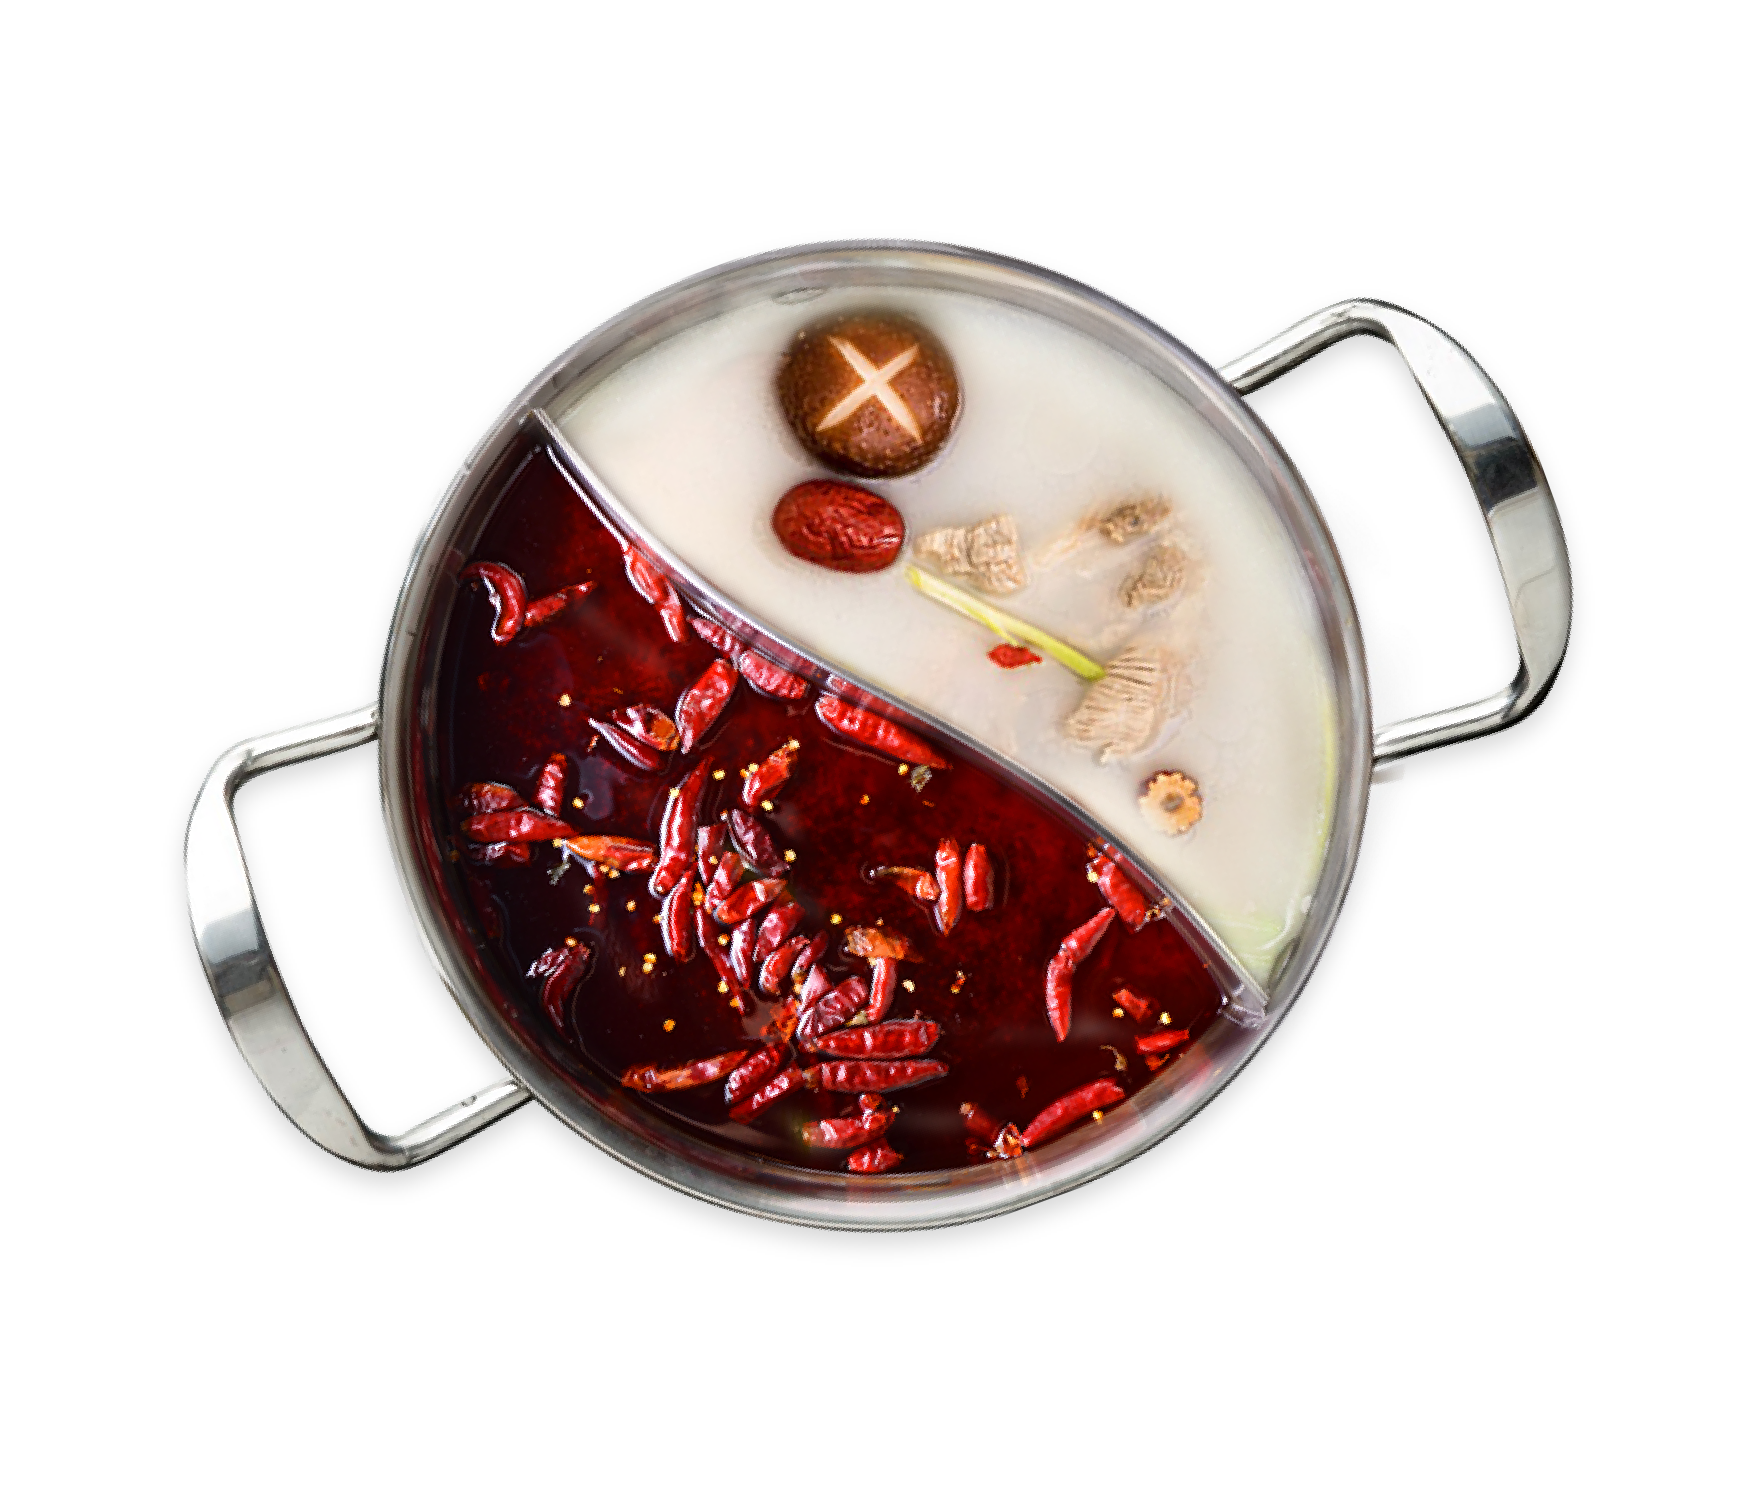 hot-pot-dish-meal-food-bowl-transparent-png-804399